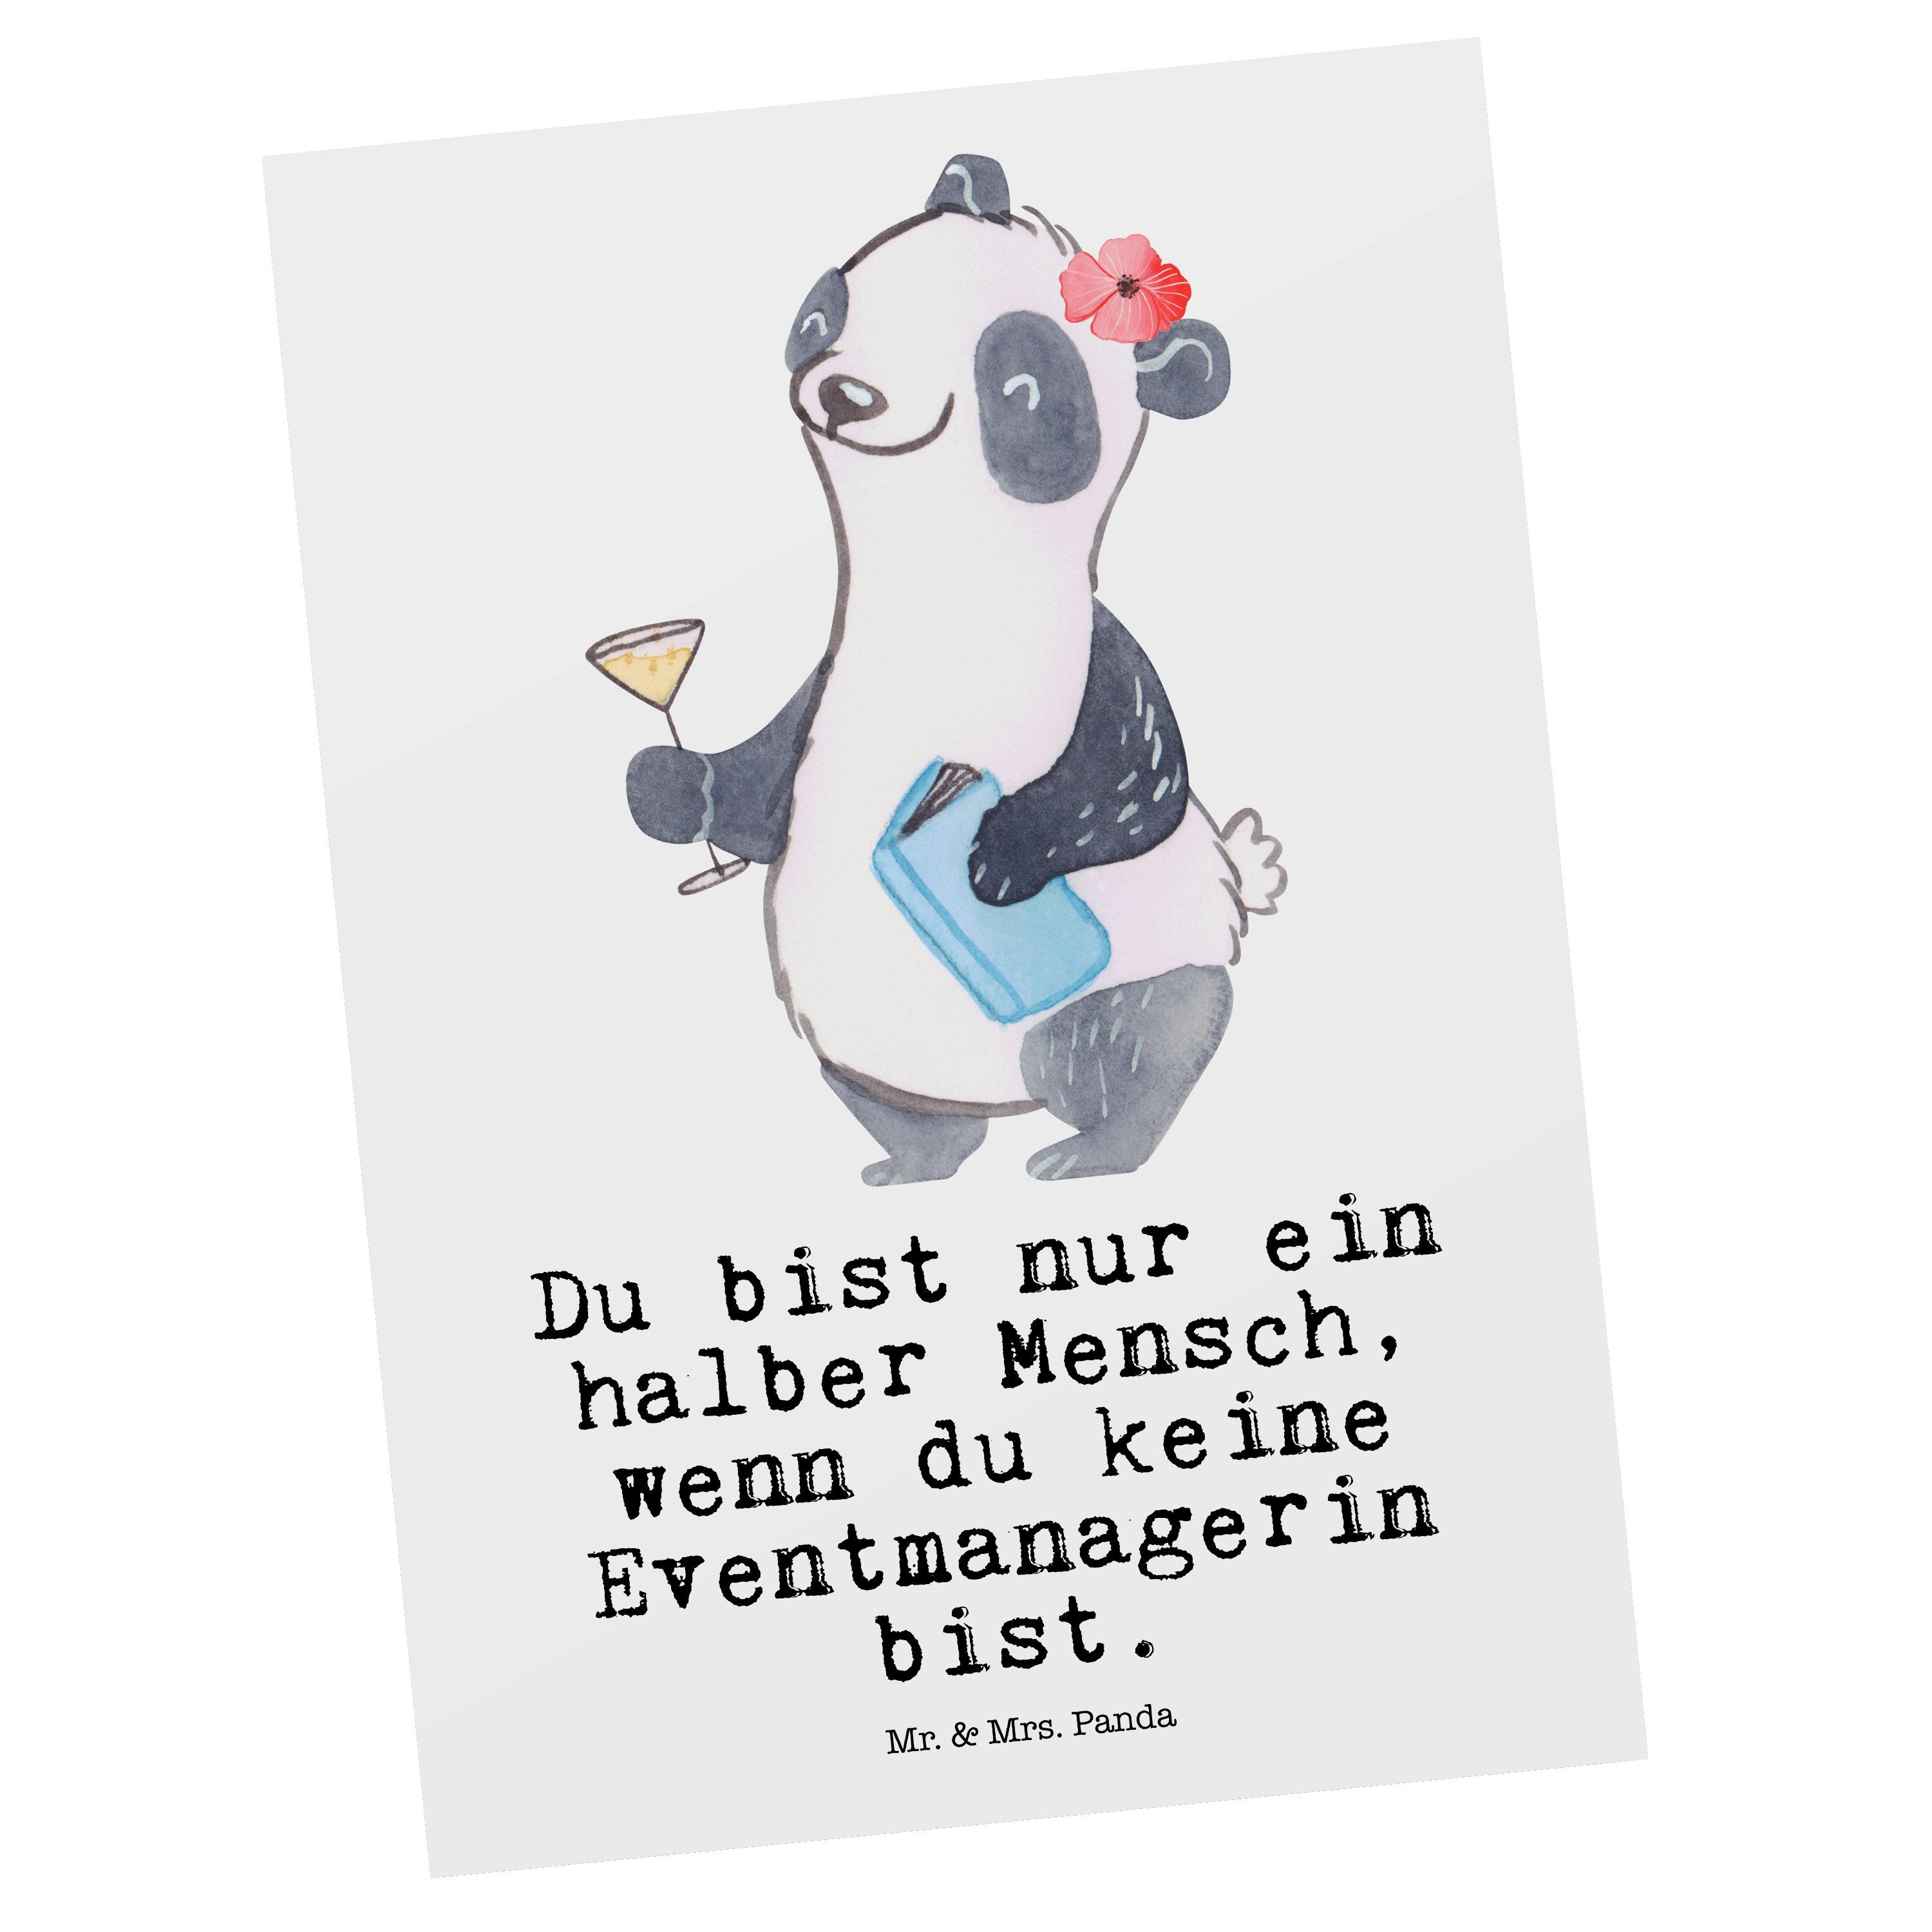 Mrs. - - Panda Veranstalteri & Postkarte Weiß Eventmanagerin mit Herz Geschenk, girls night, Mr.